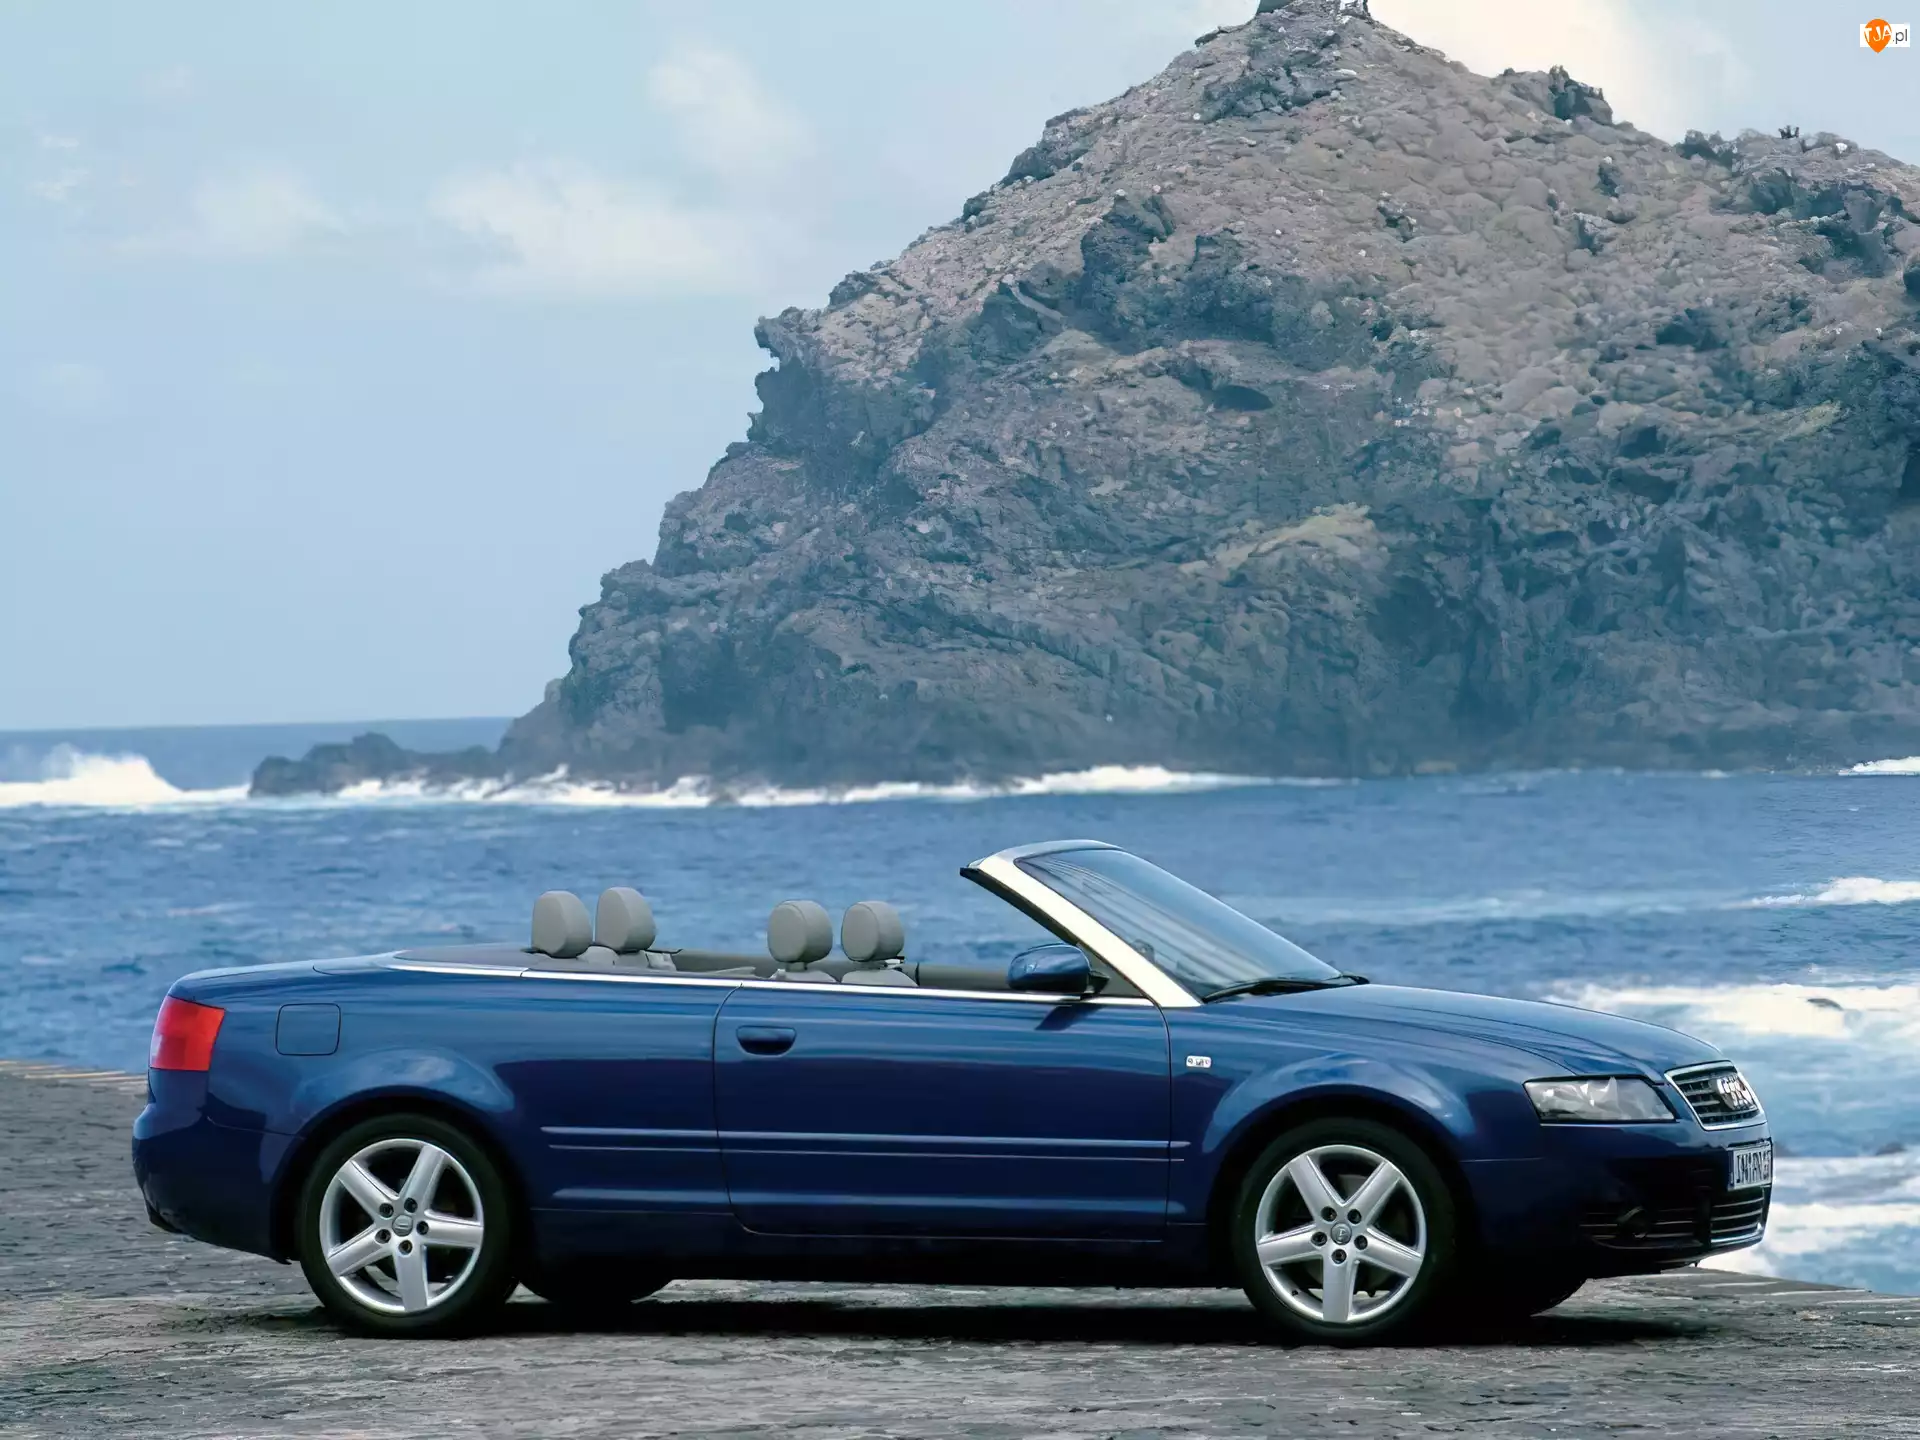 Cabrio, Niebieski, Audi A4